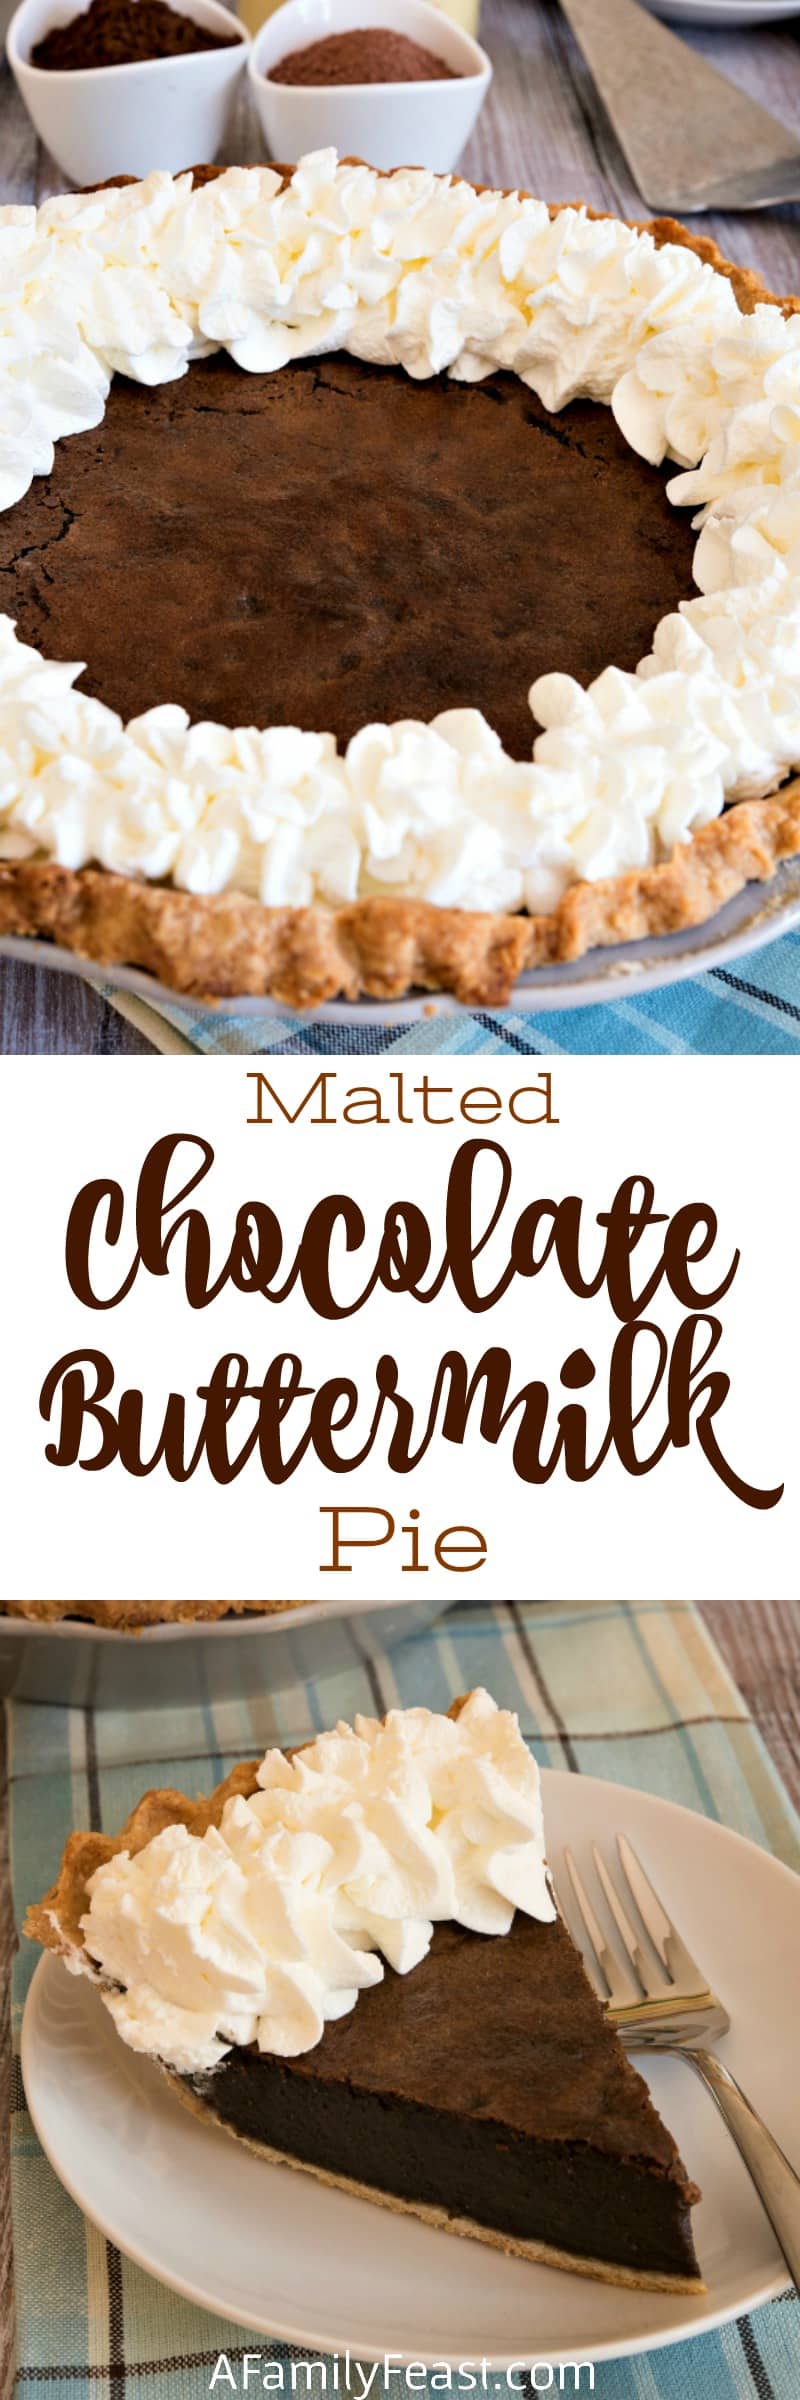 Malted Chocolate Buttermilk Pie 